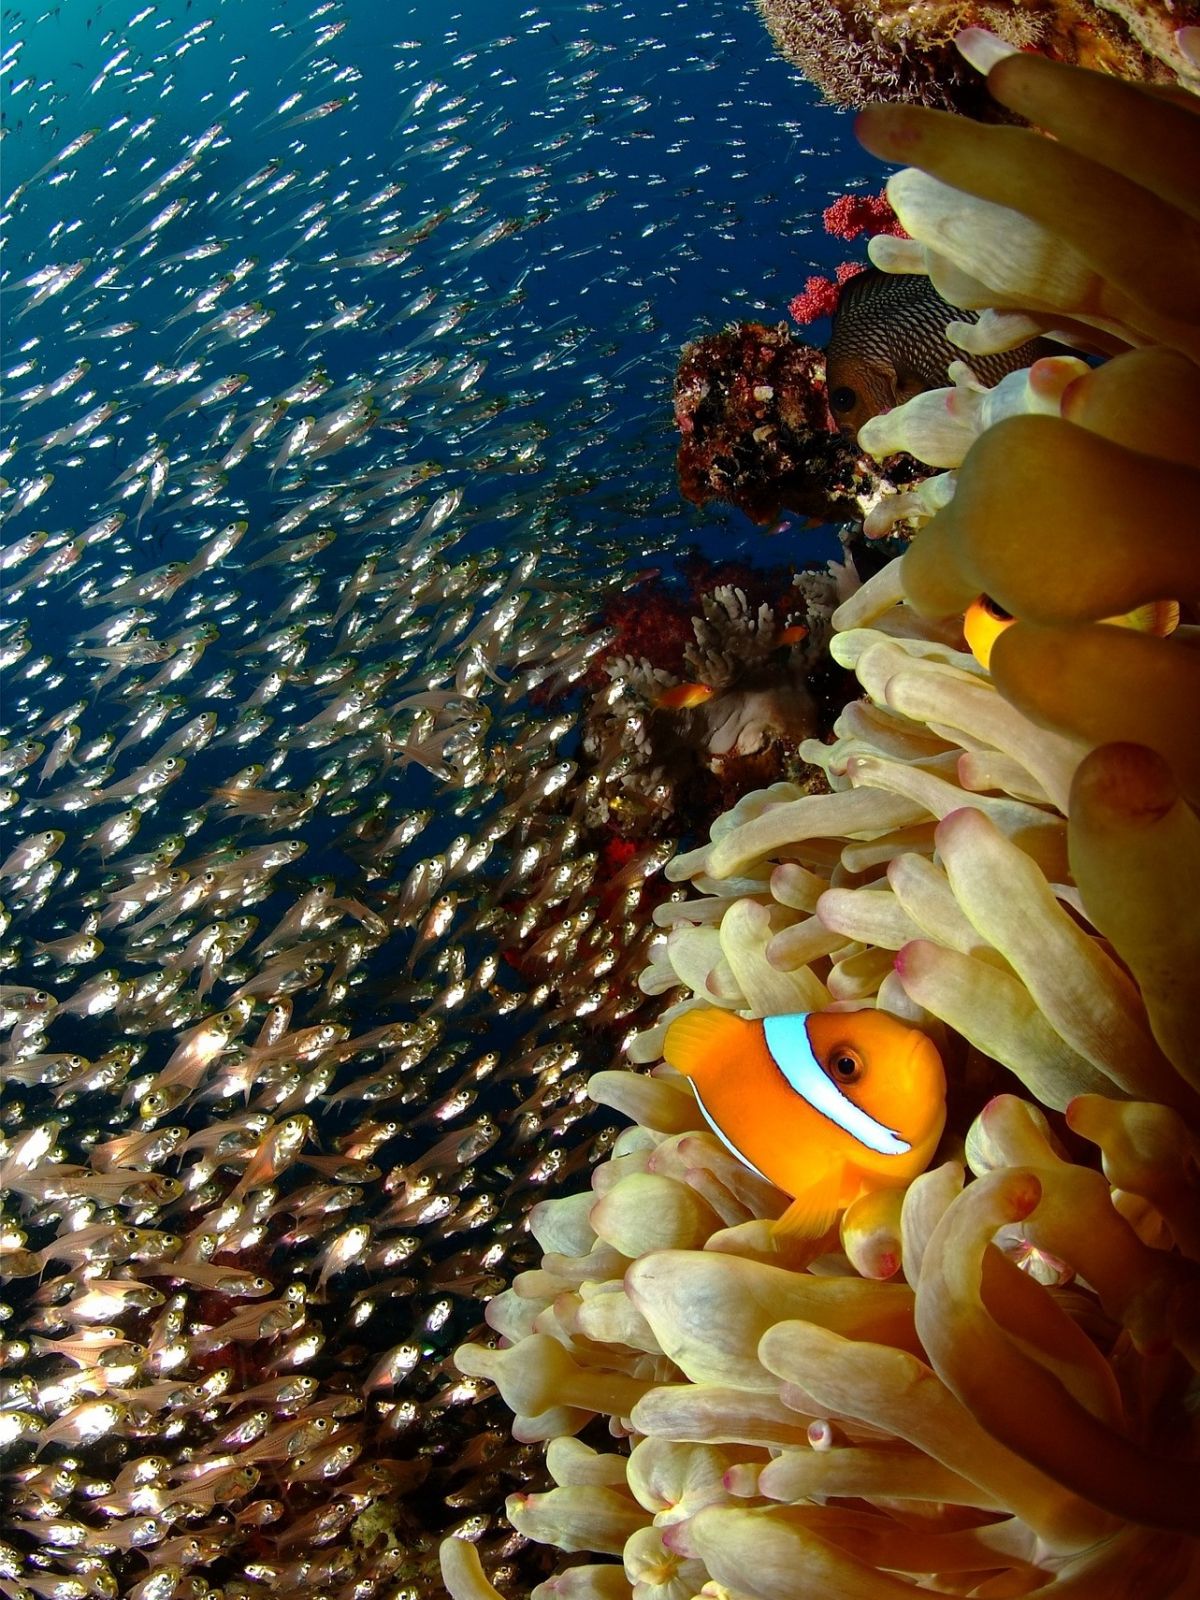 Korallen gehören zu den großen Primärproduzenten in den Flachwasserbereichen der Ozeane.
